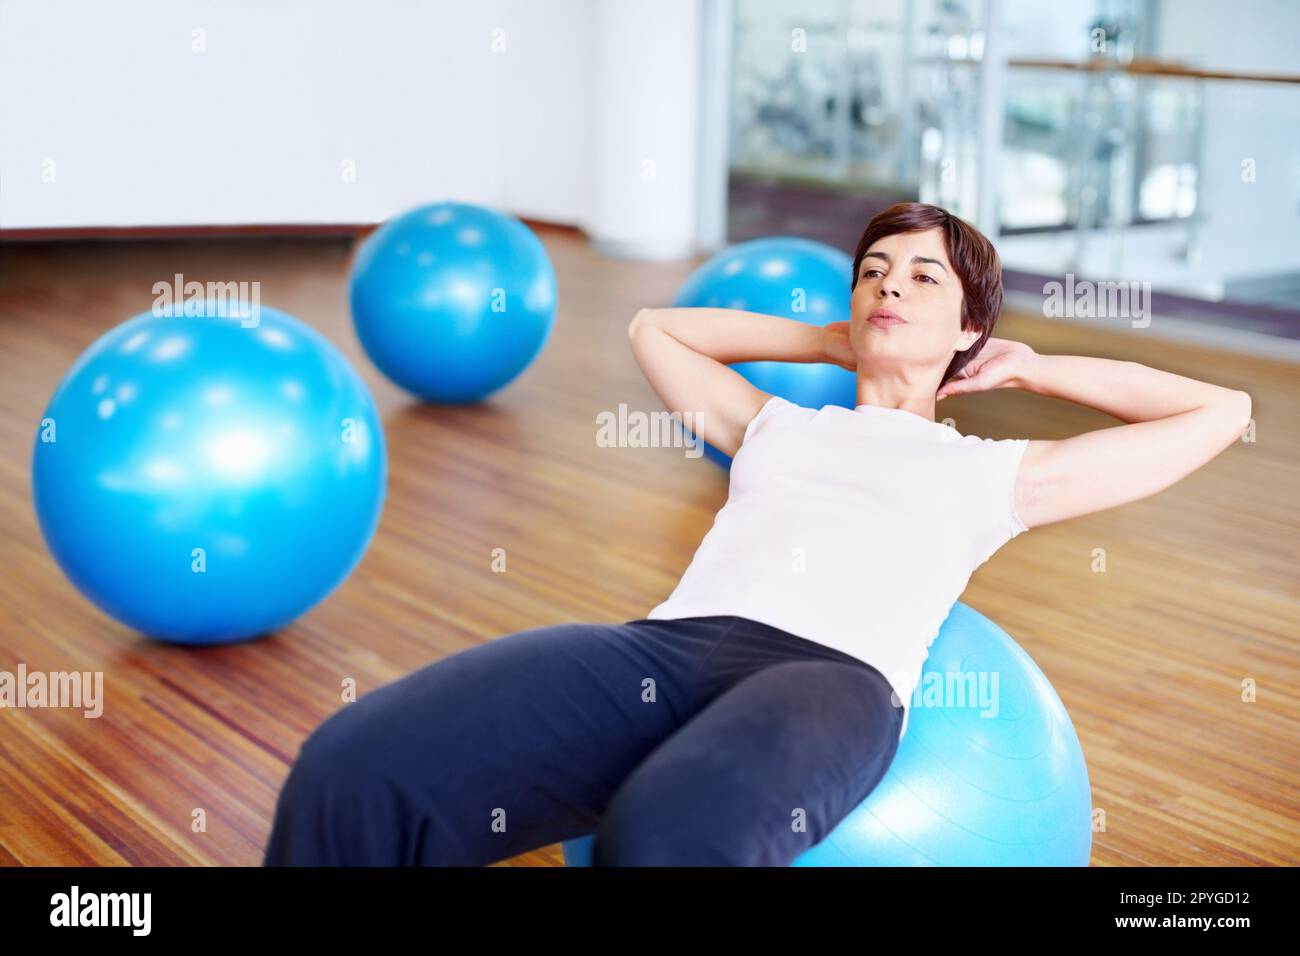 Siediti e allenati. Donna che fa sedersi in su usando la sfera di idoneità in una palestra. Foto Stock